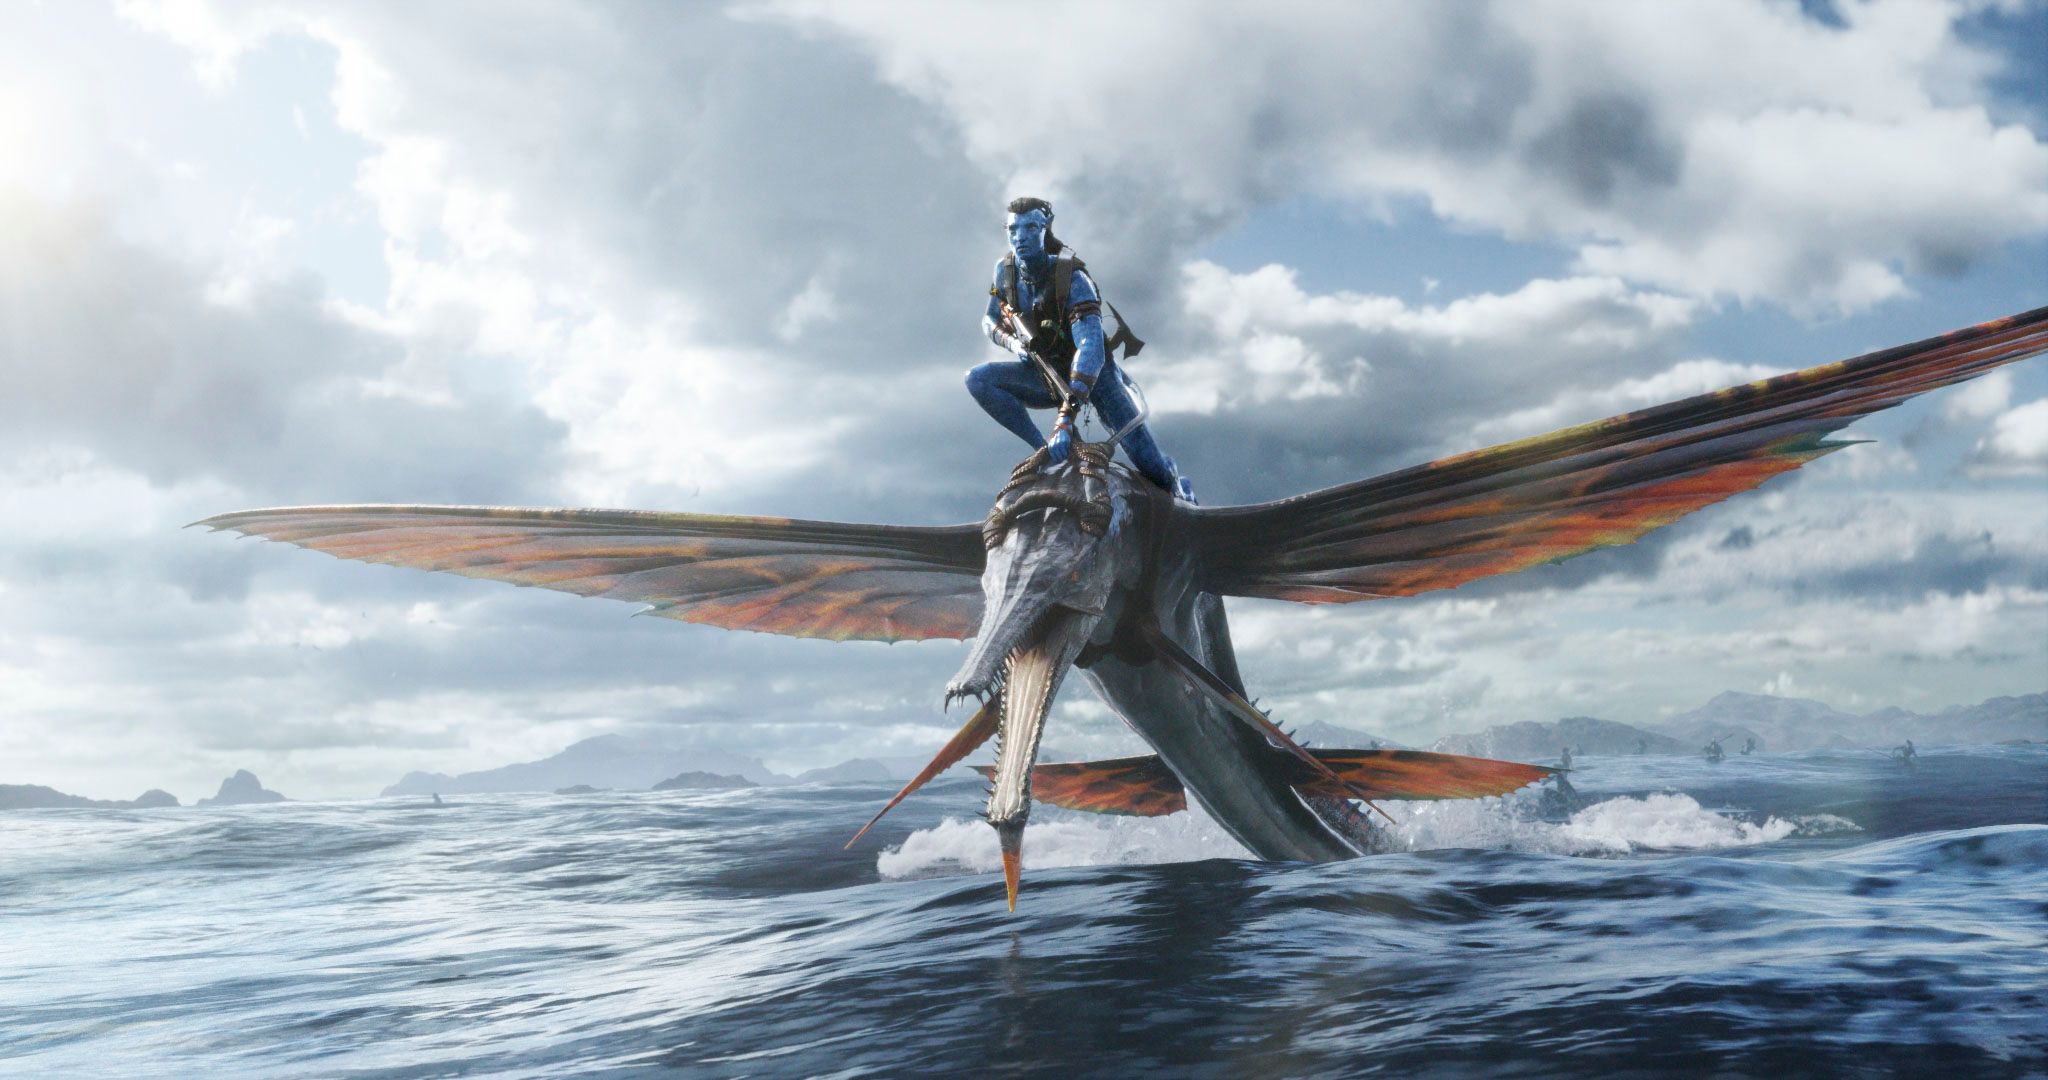 Avatar 2 Image Reveals Breathtaking Underwater Visuals